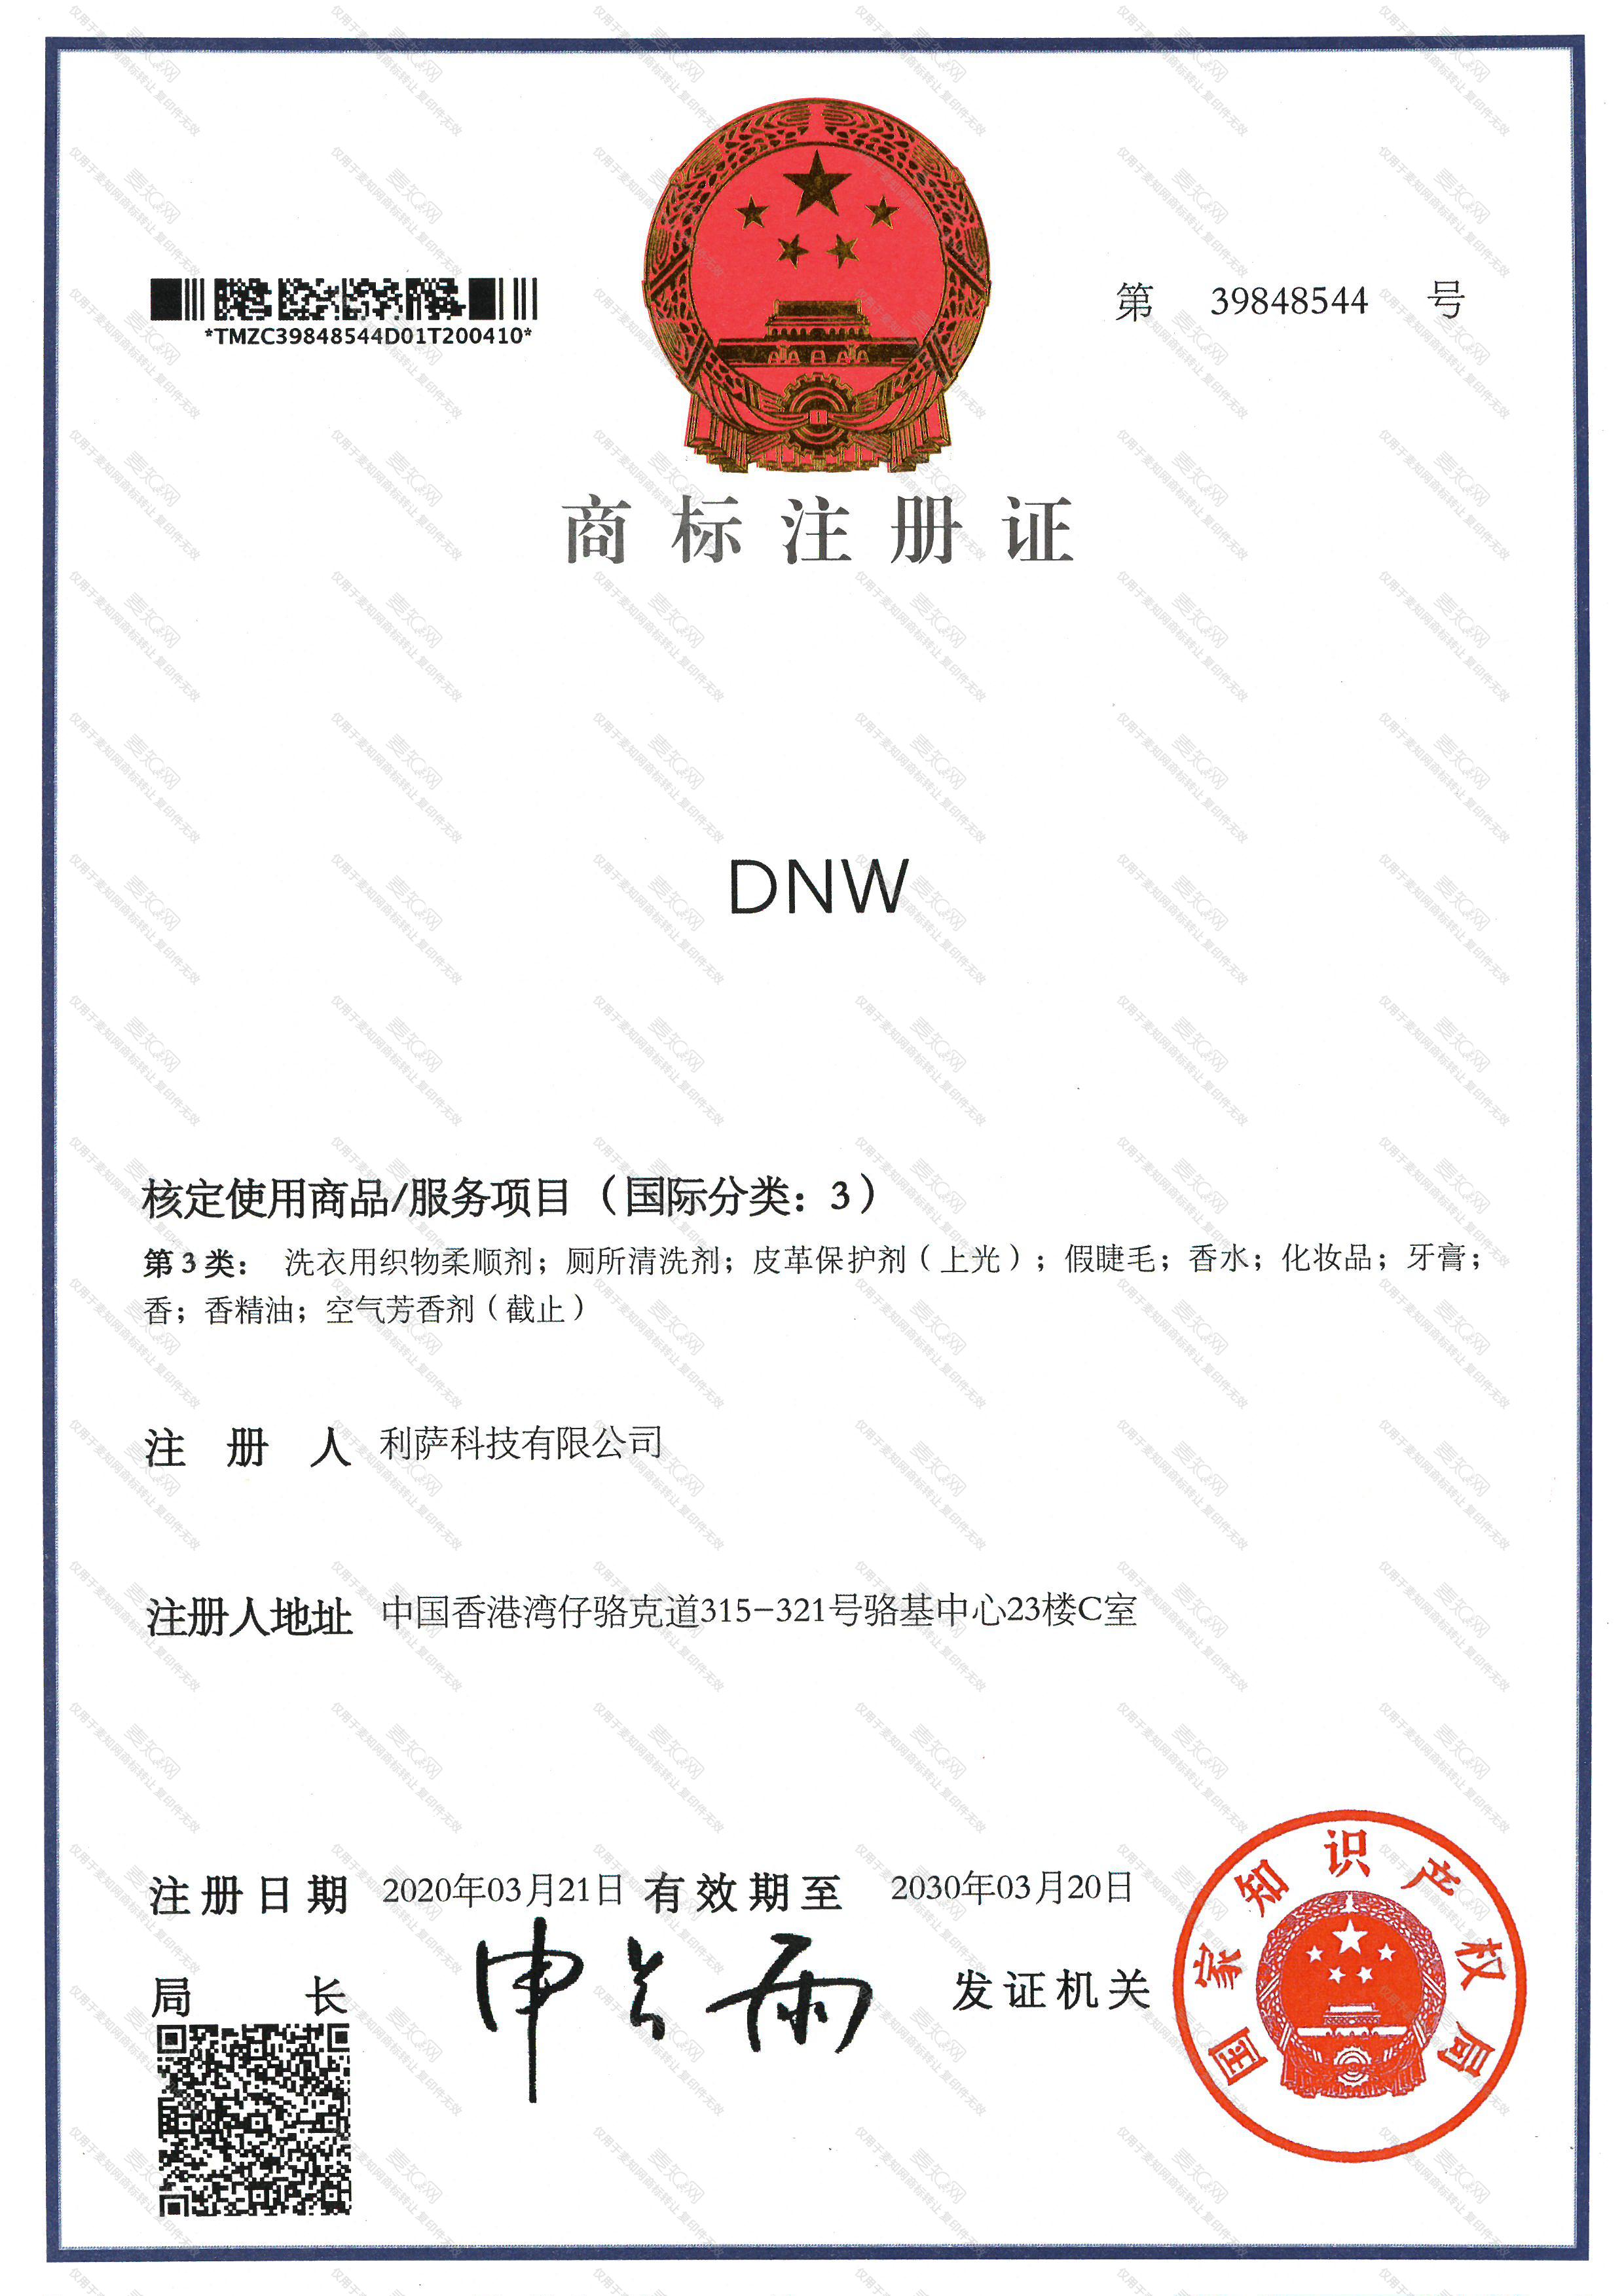 DNW注册证